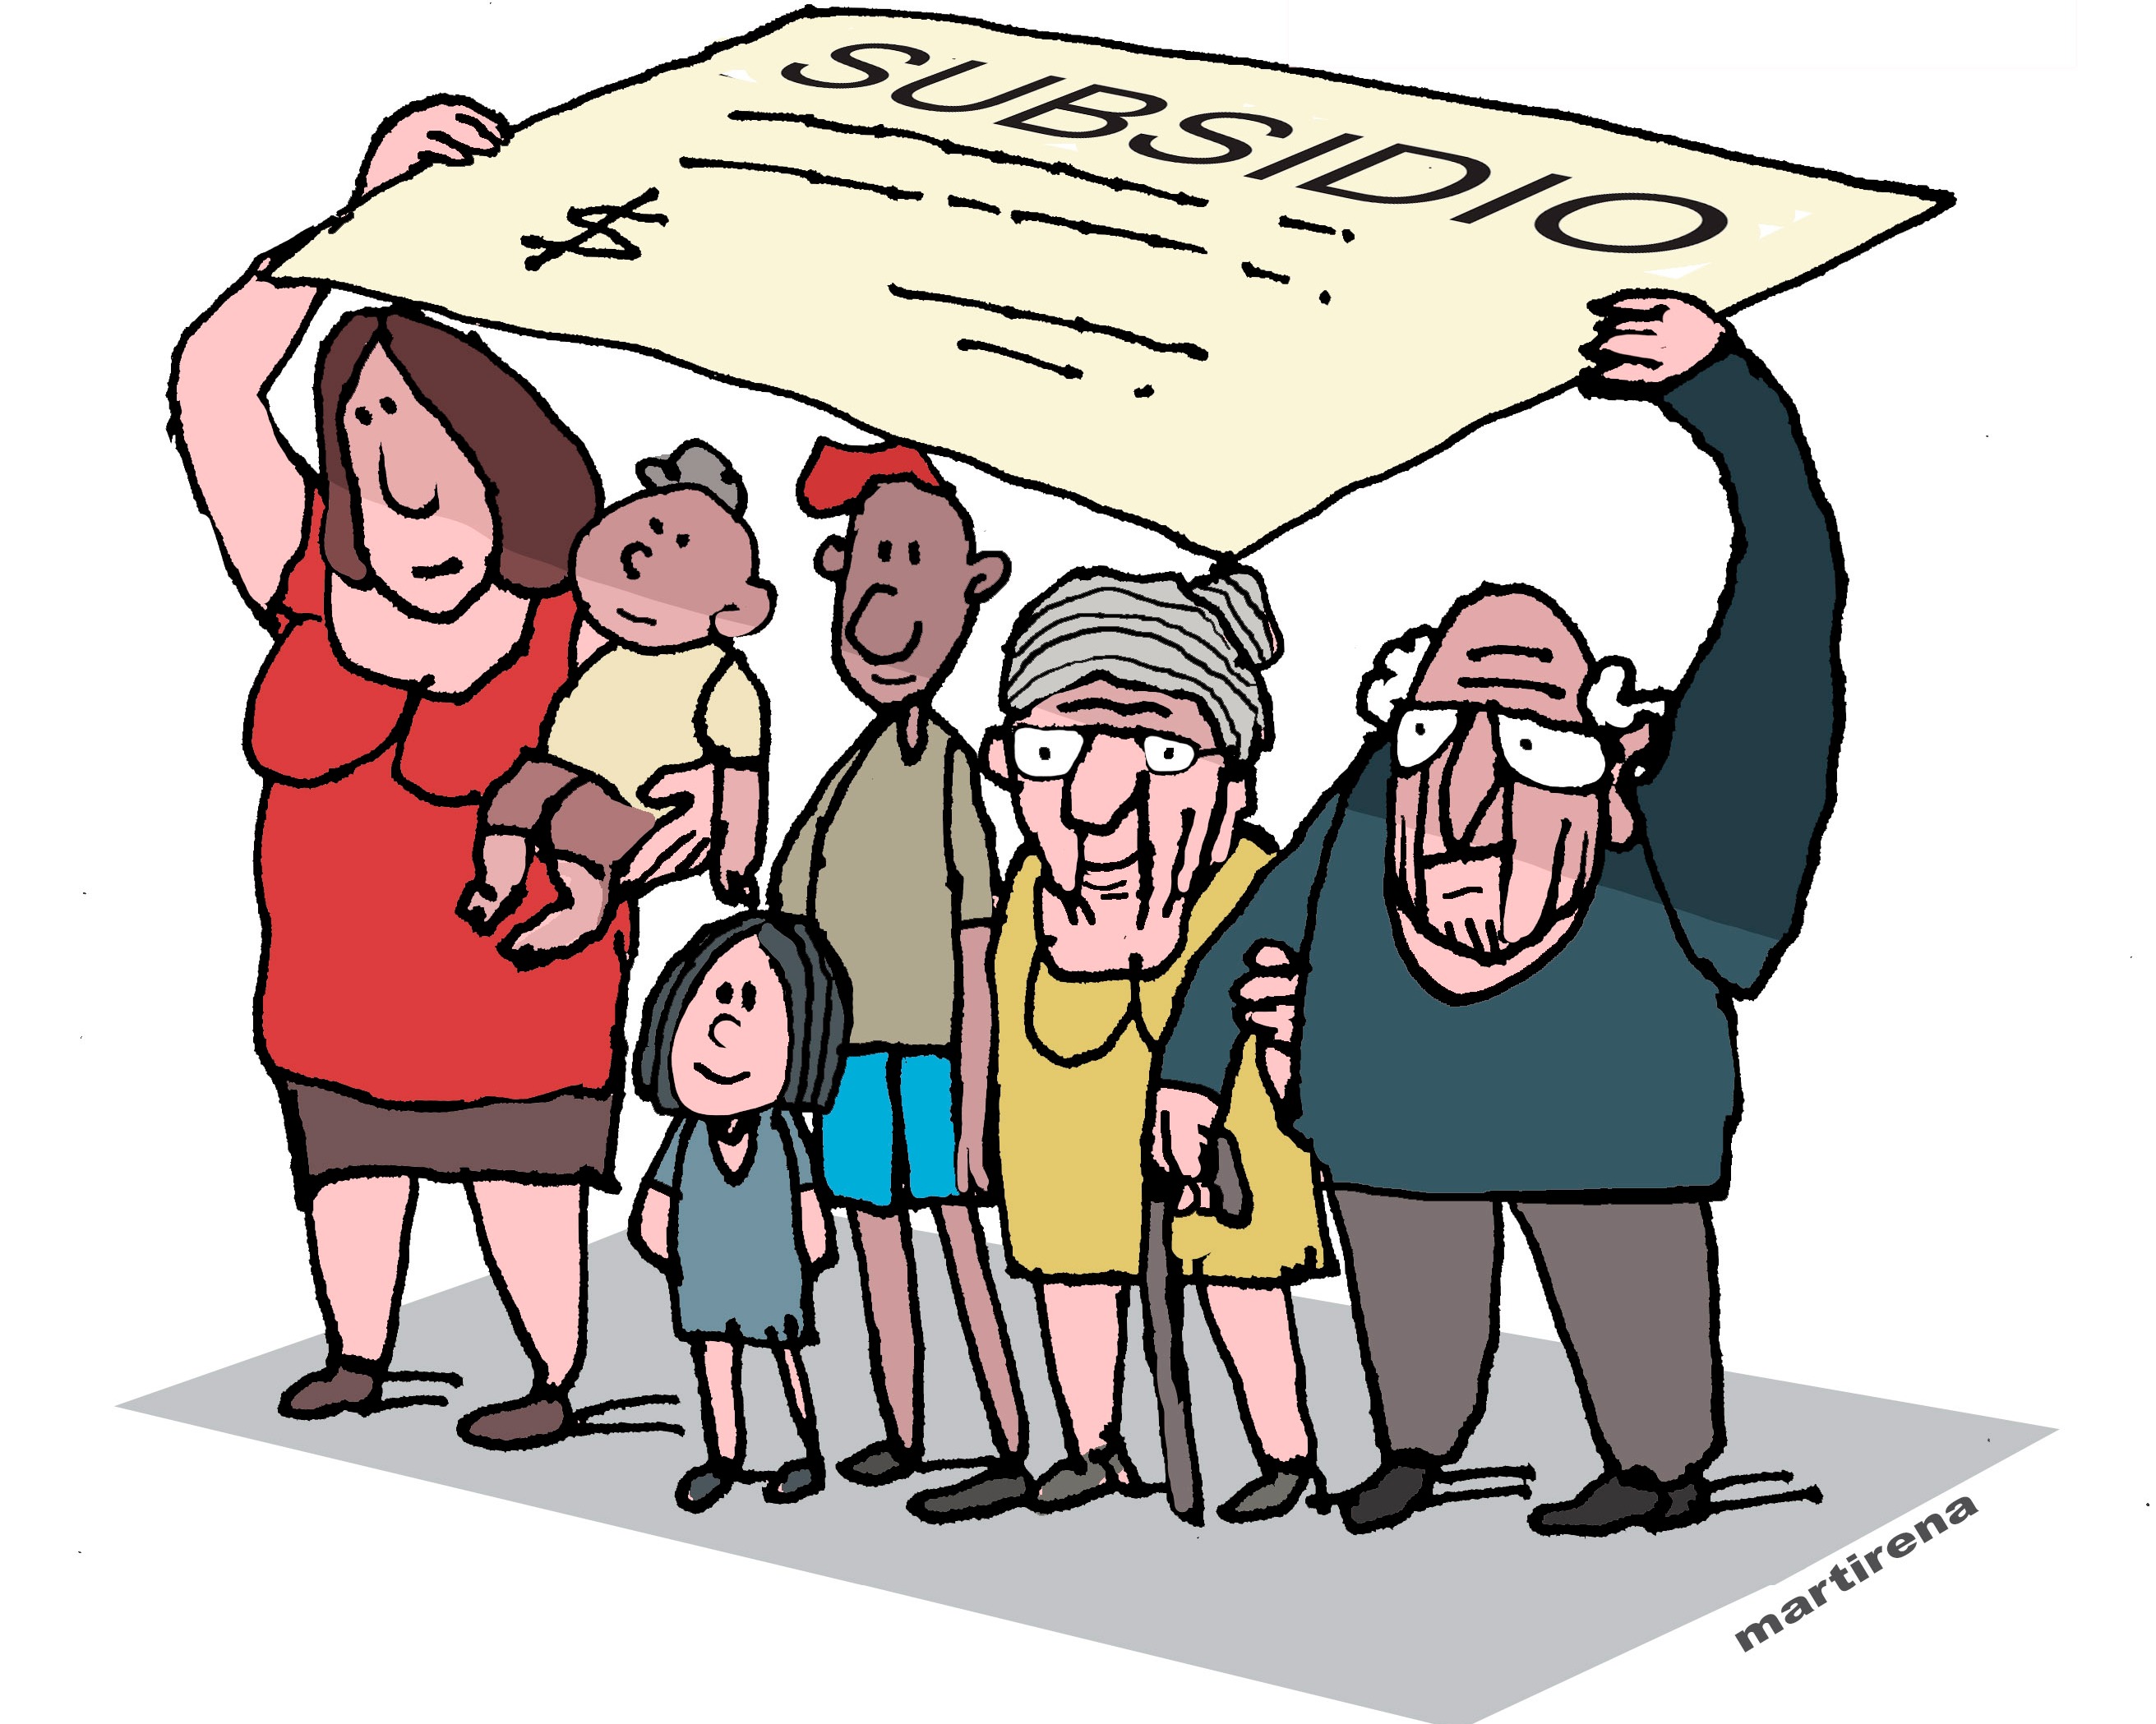 Ilustración de Martirena sobre los subsidios